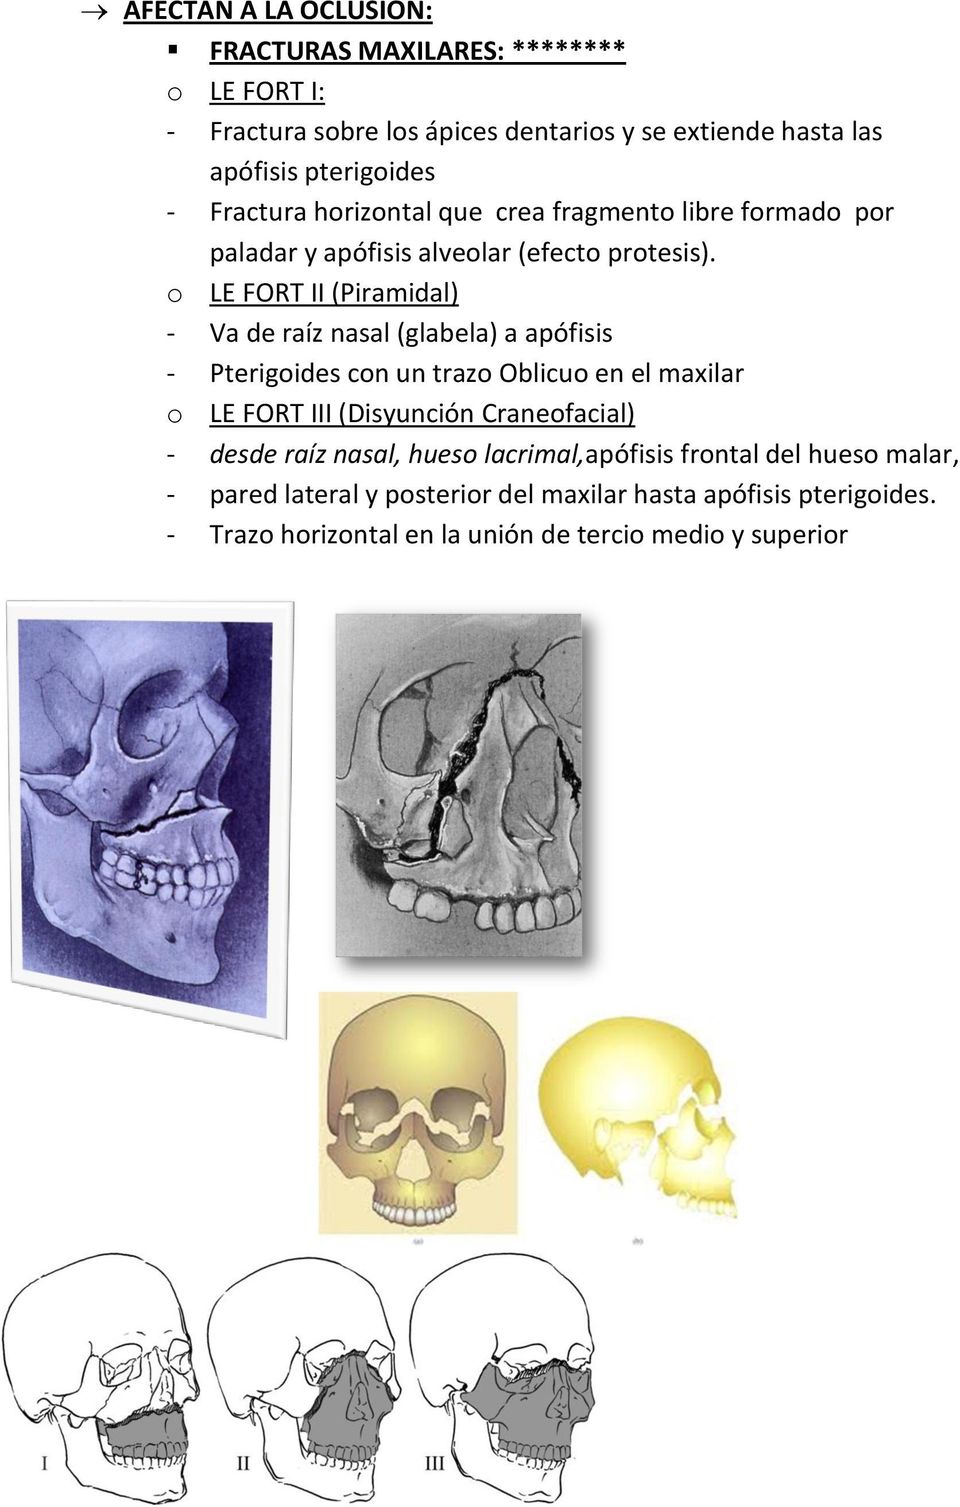 o LE FORT II (Piramidal) - Va de raíz nasal (glabela) a apófisis - Pterigoides con un trazo Oblicuo en el maxilar o LE FORT III (Disyunción